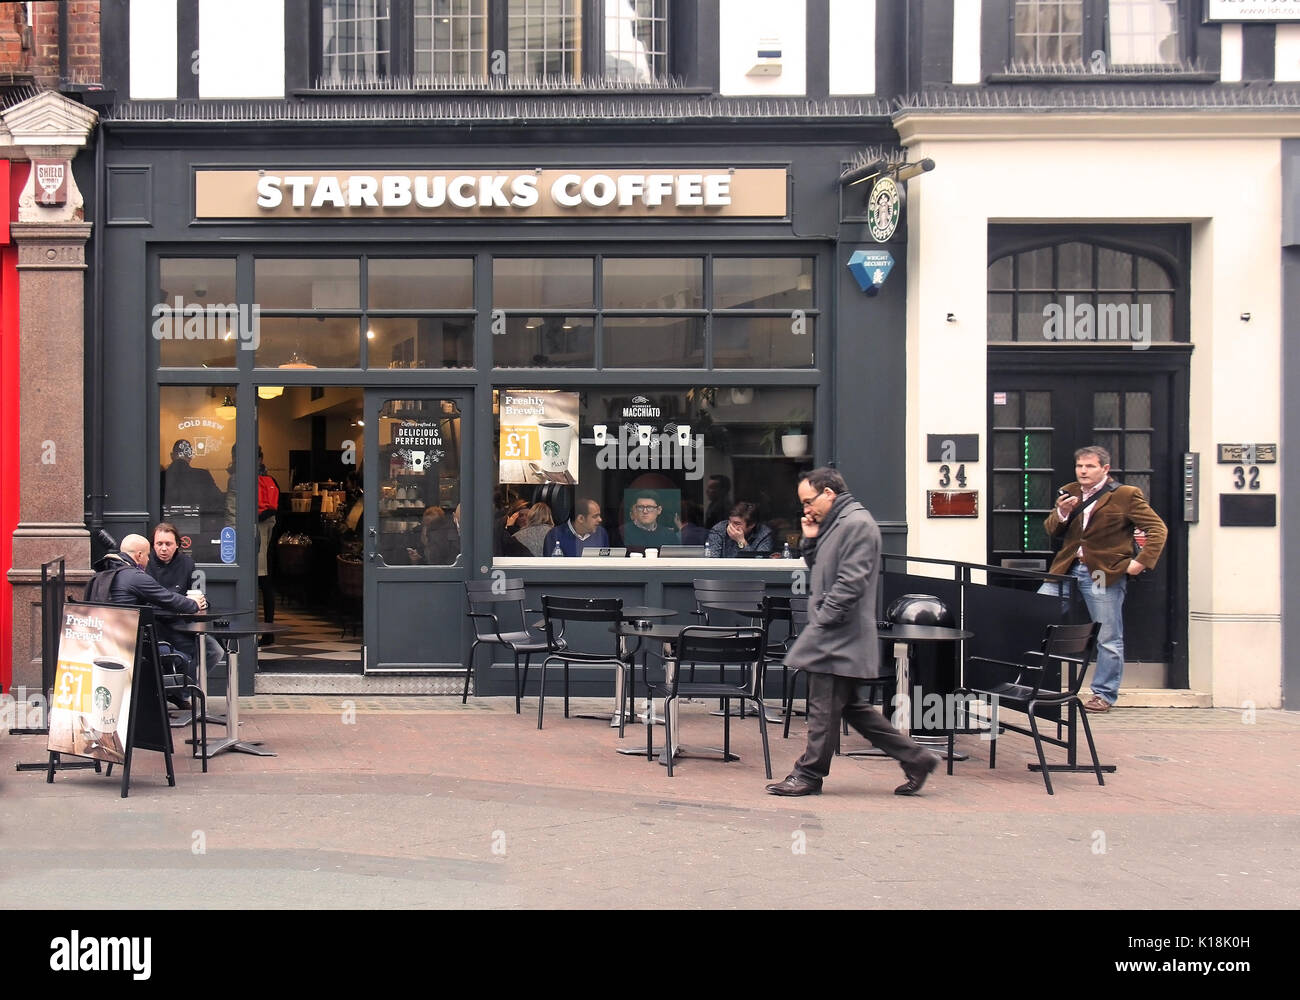 Londres, Reino Unido - 24 de marzo: Starbucks coffee shop dentro de Carnaby Street con gente tomando bebidas en Londres, Reino Unido - 24 de marzo de 2016, Starbucks es un AM Foto de stock